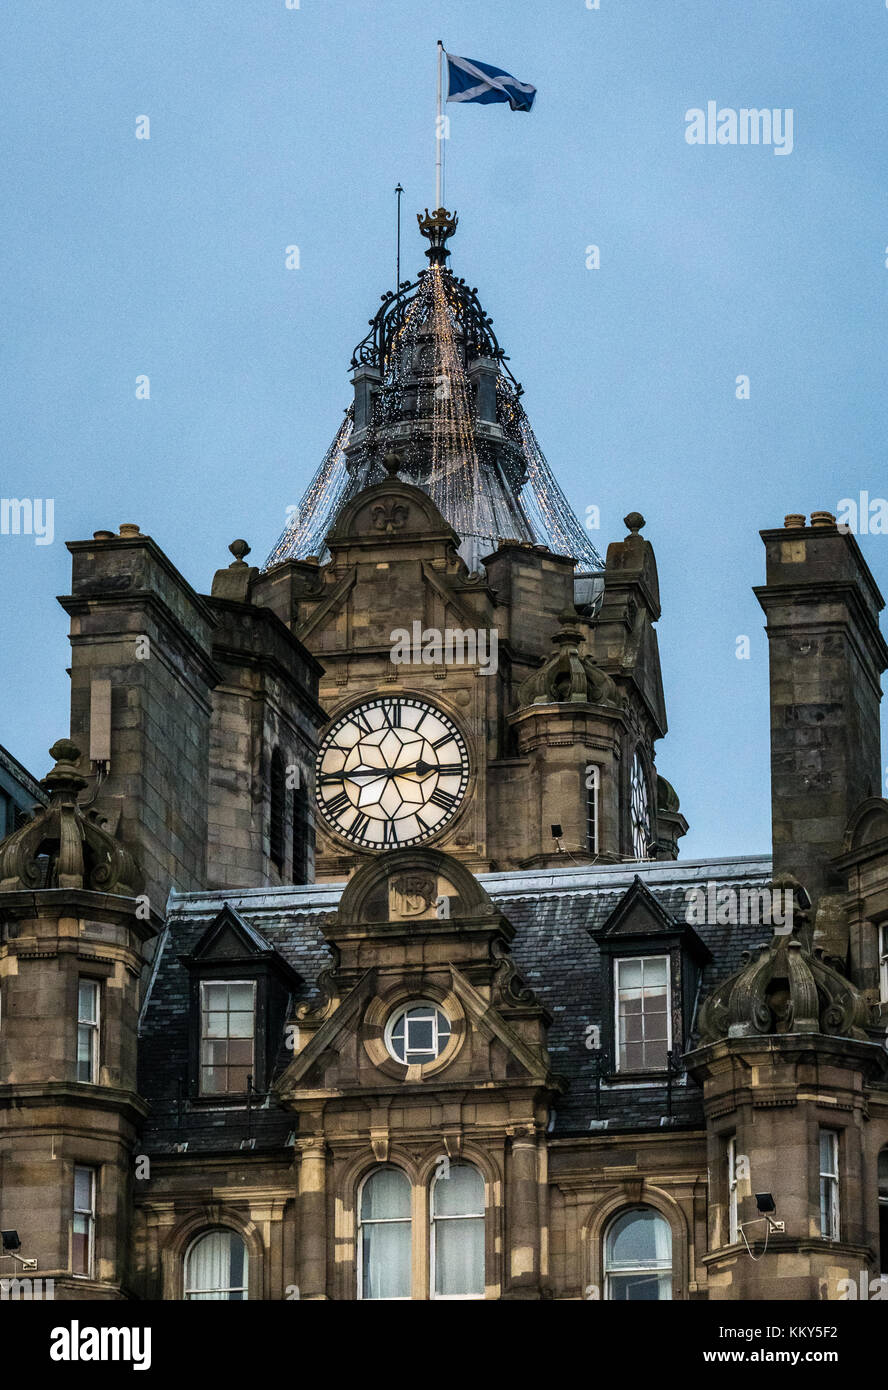 Rocco Forte Balmoral Hotel avec tour de l'horloge, Princes Street, Edinburgh, Ecosse, Royaume-Uni, avec décoration de Noël lumières et sautoir flag flying Banque D'Images